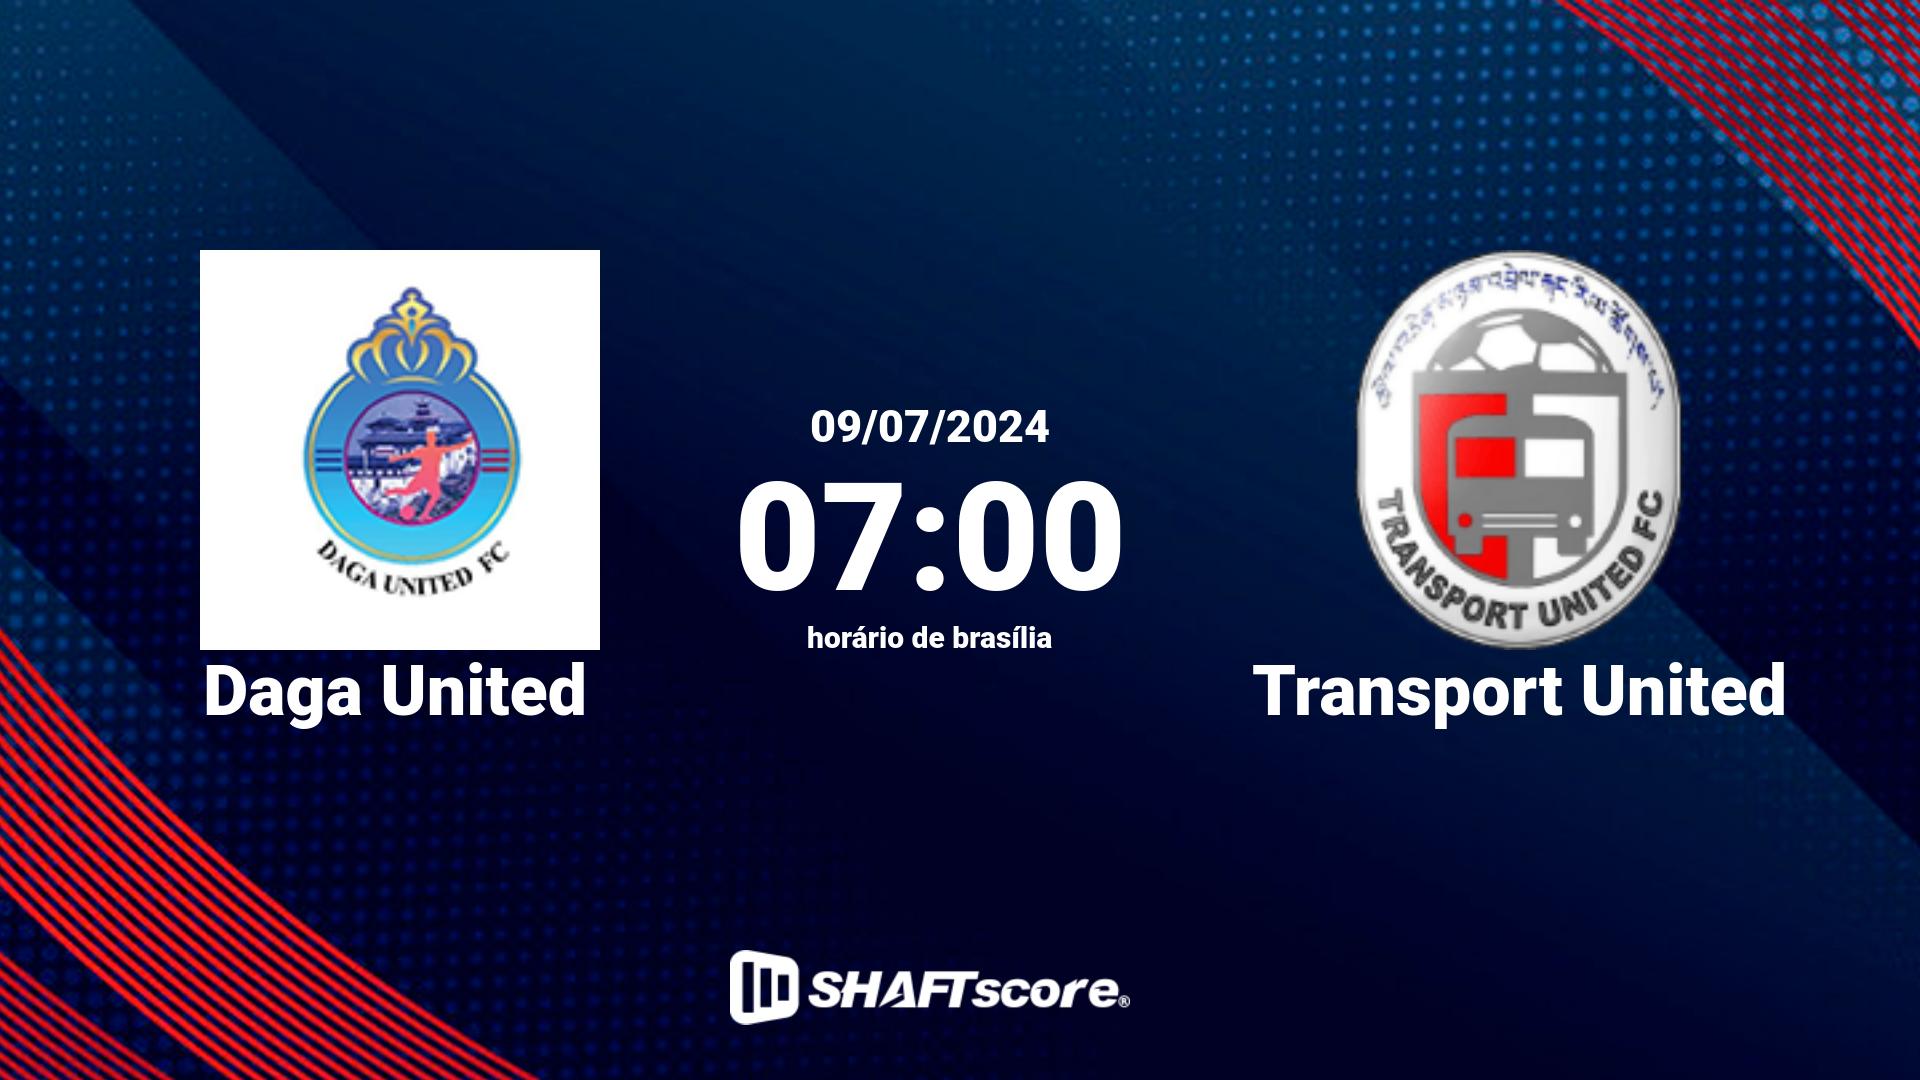 Estatísticas do jogo Daga United vs Transport United 09.07 07:00